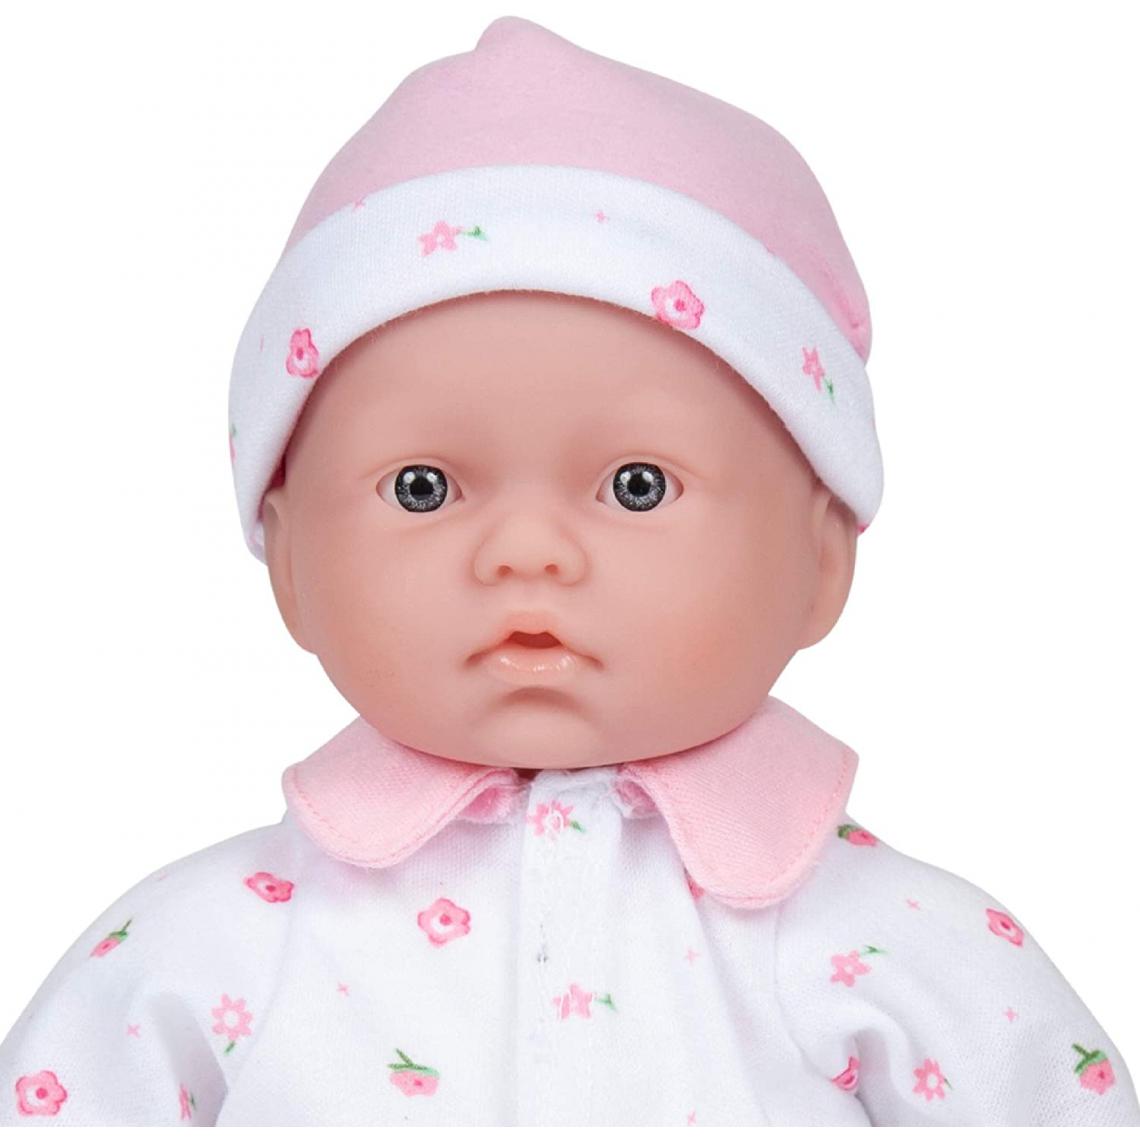 Inconnu - JC Toys - La Baby - Petite poupée - 27 cm - Lavable - Rose - avec Chapeau et Couverture - pour Enfants de 12 Mois et Plus - Poupons